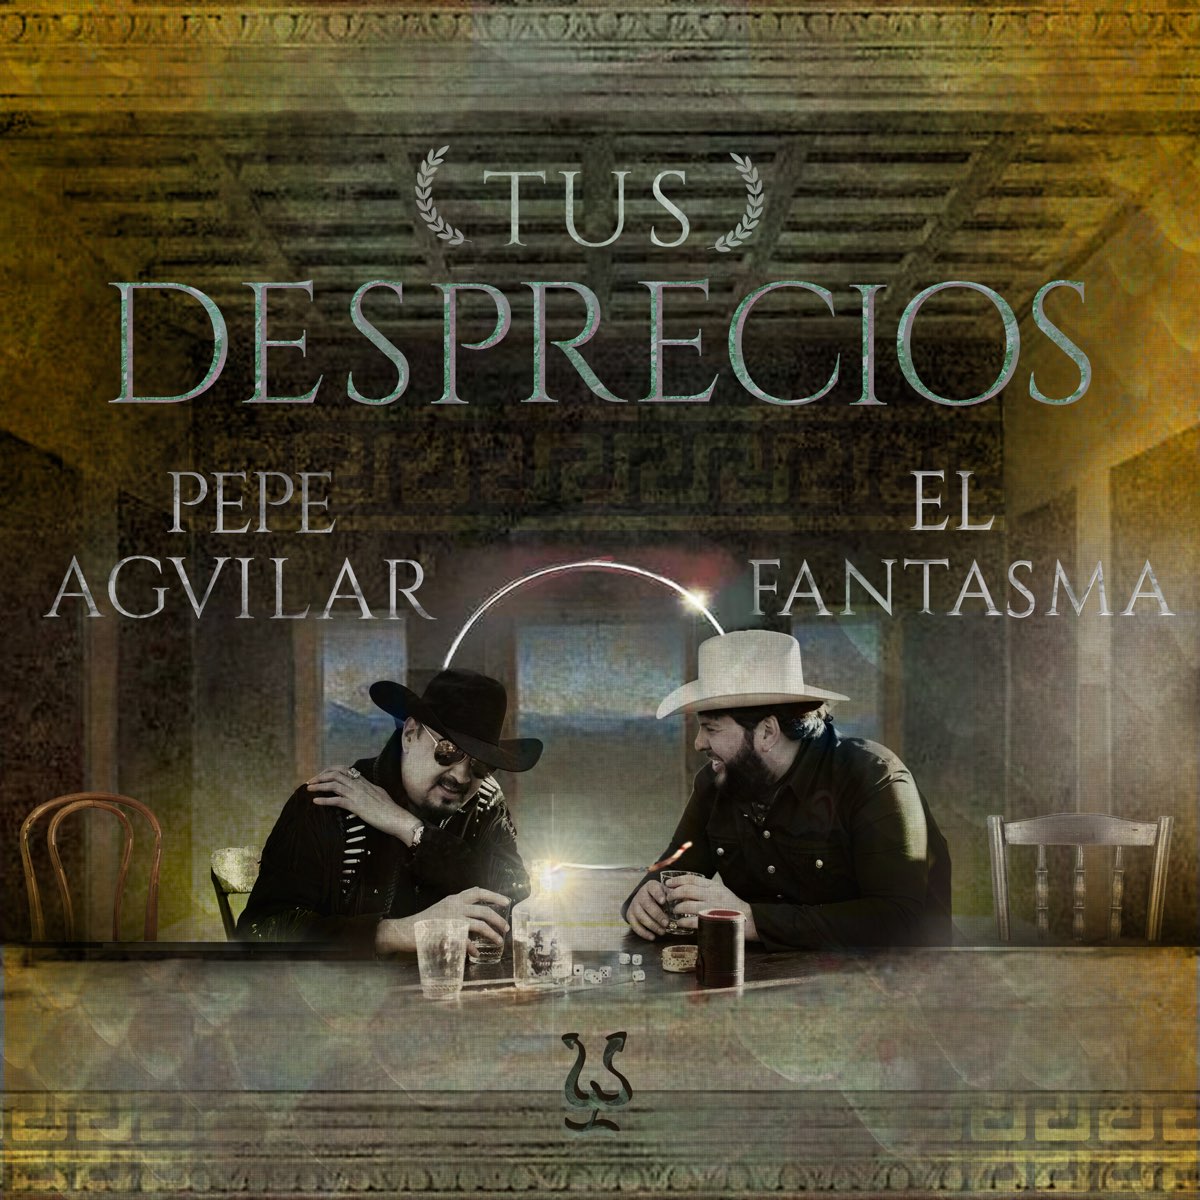 ‎tus Desprecios Single Album By Pepe Aguilar And El Fantasma Apple Music 8584